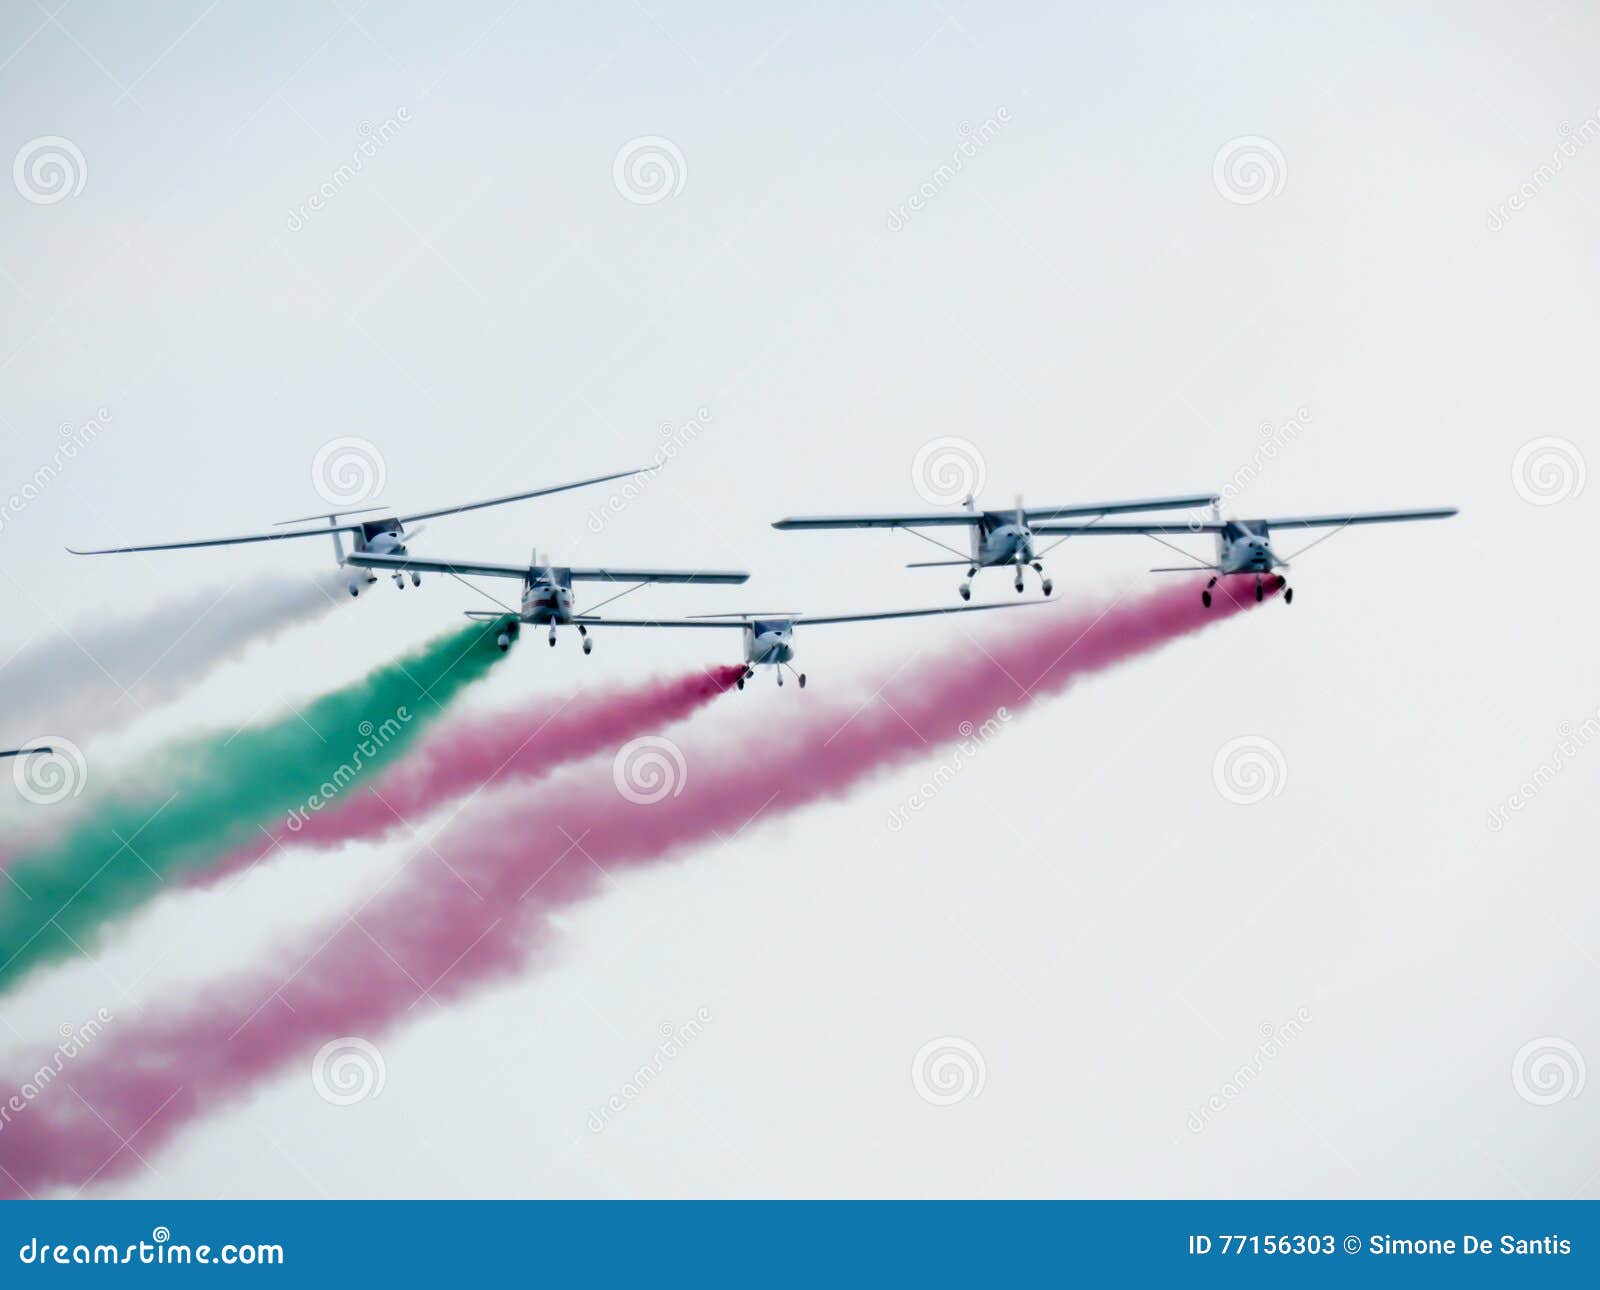 Ο αέρας βελών Tricolor παρουσιάζει Tirrenia, Πίζα, Ιταλία, στις 11 Σεπτεμβρίου, 2. Tirrenia, Πίζα, Ιταλία, στις 11 Σεπτεμβρίου 2016 το aerobatic σφύριγμα βελών tricolor με χρωματισμένο τον καπνός αέρα παρουσιάζει